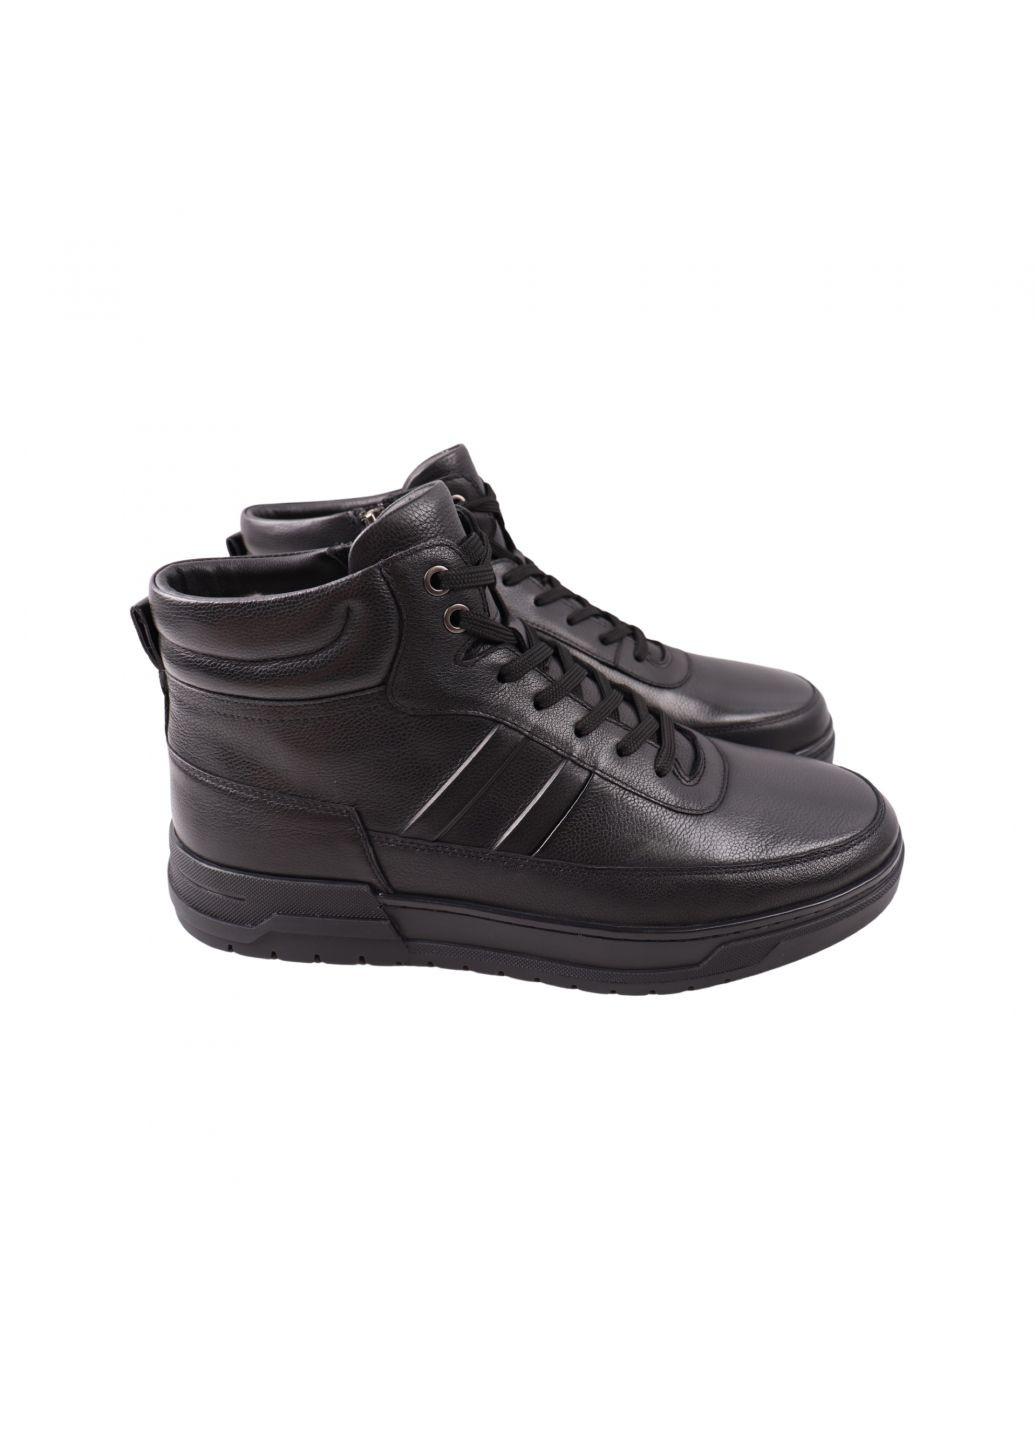 Черные ботинки мужские черные натуральная кожа Emillio Landini